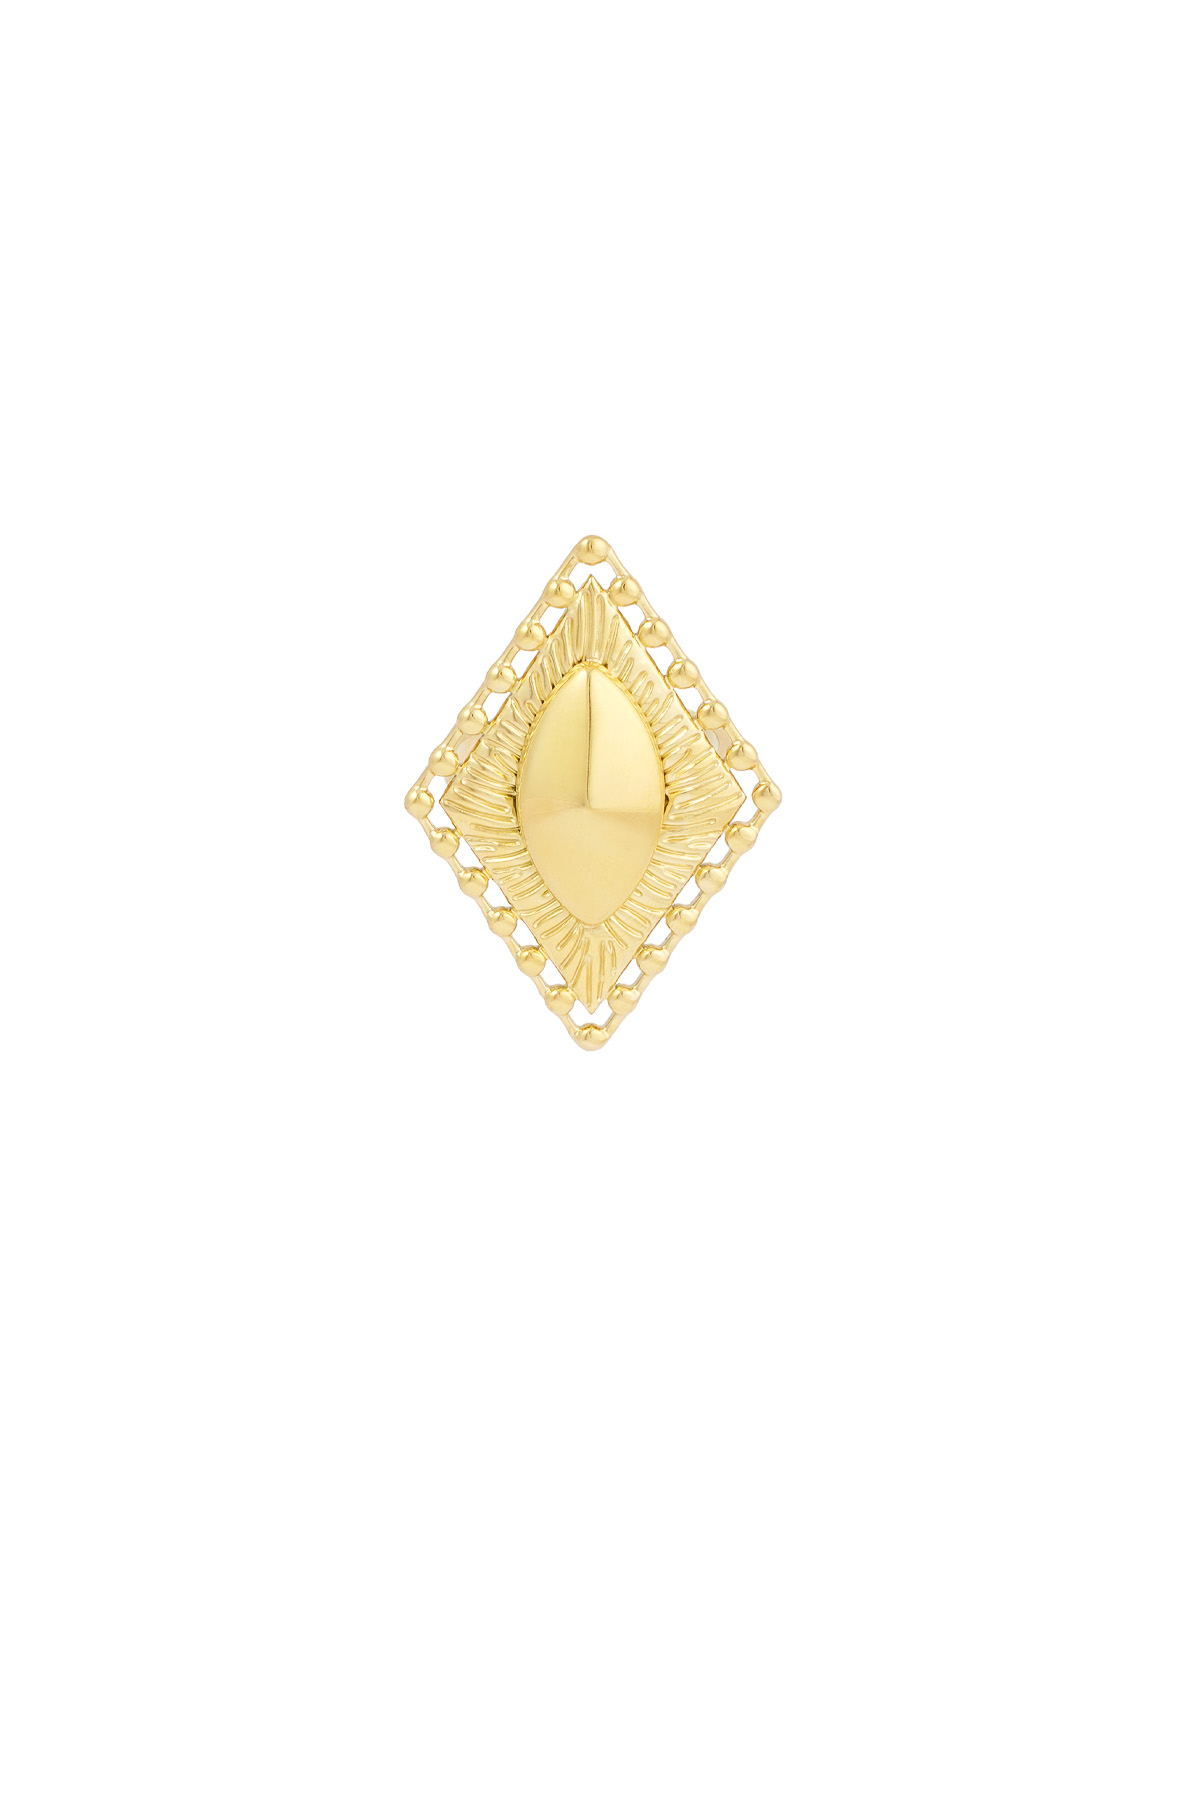 Ring vintage diamond detail - gold h5 